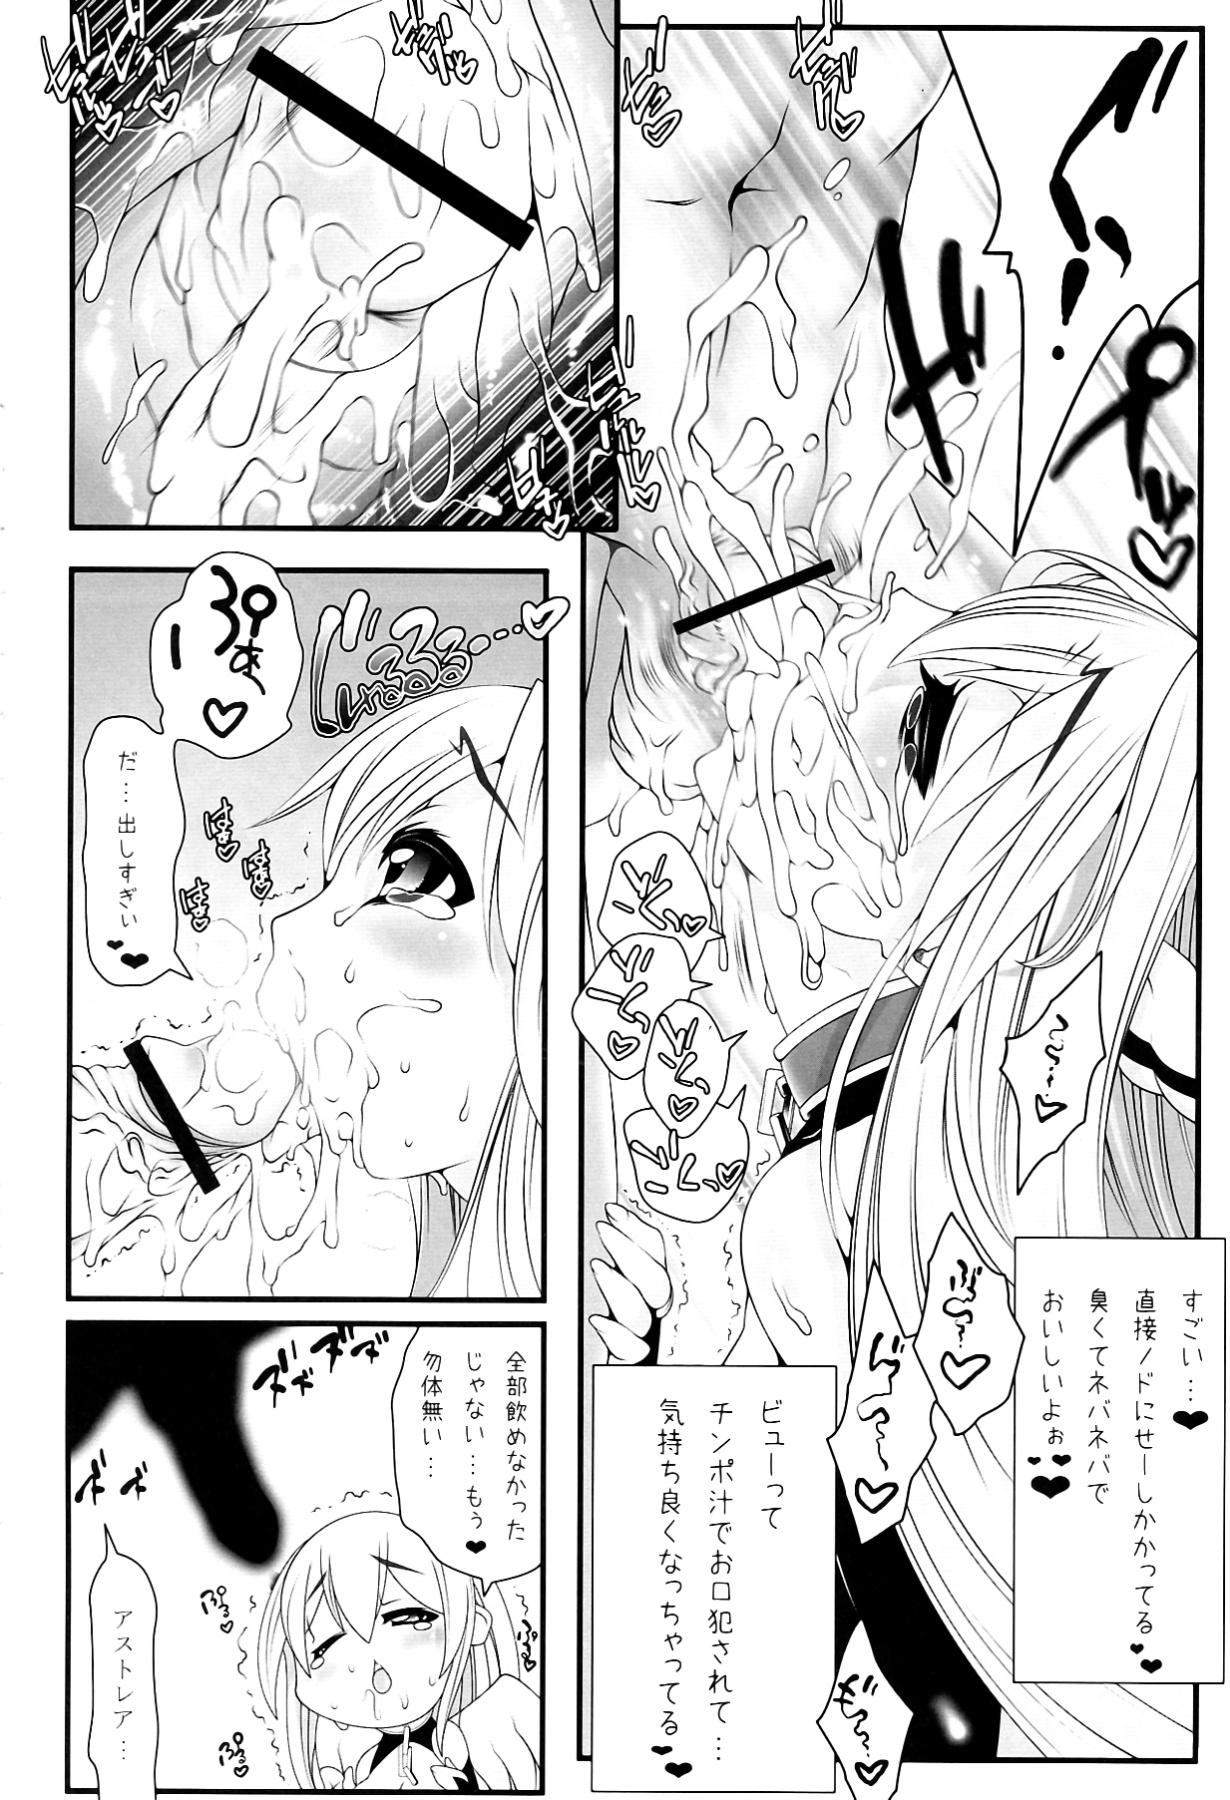 Emo Astraea-san to. - Sora no otoshimono Ex Girlfriends - Page 8